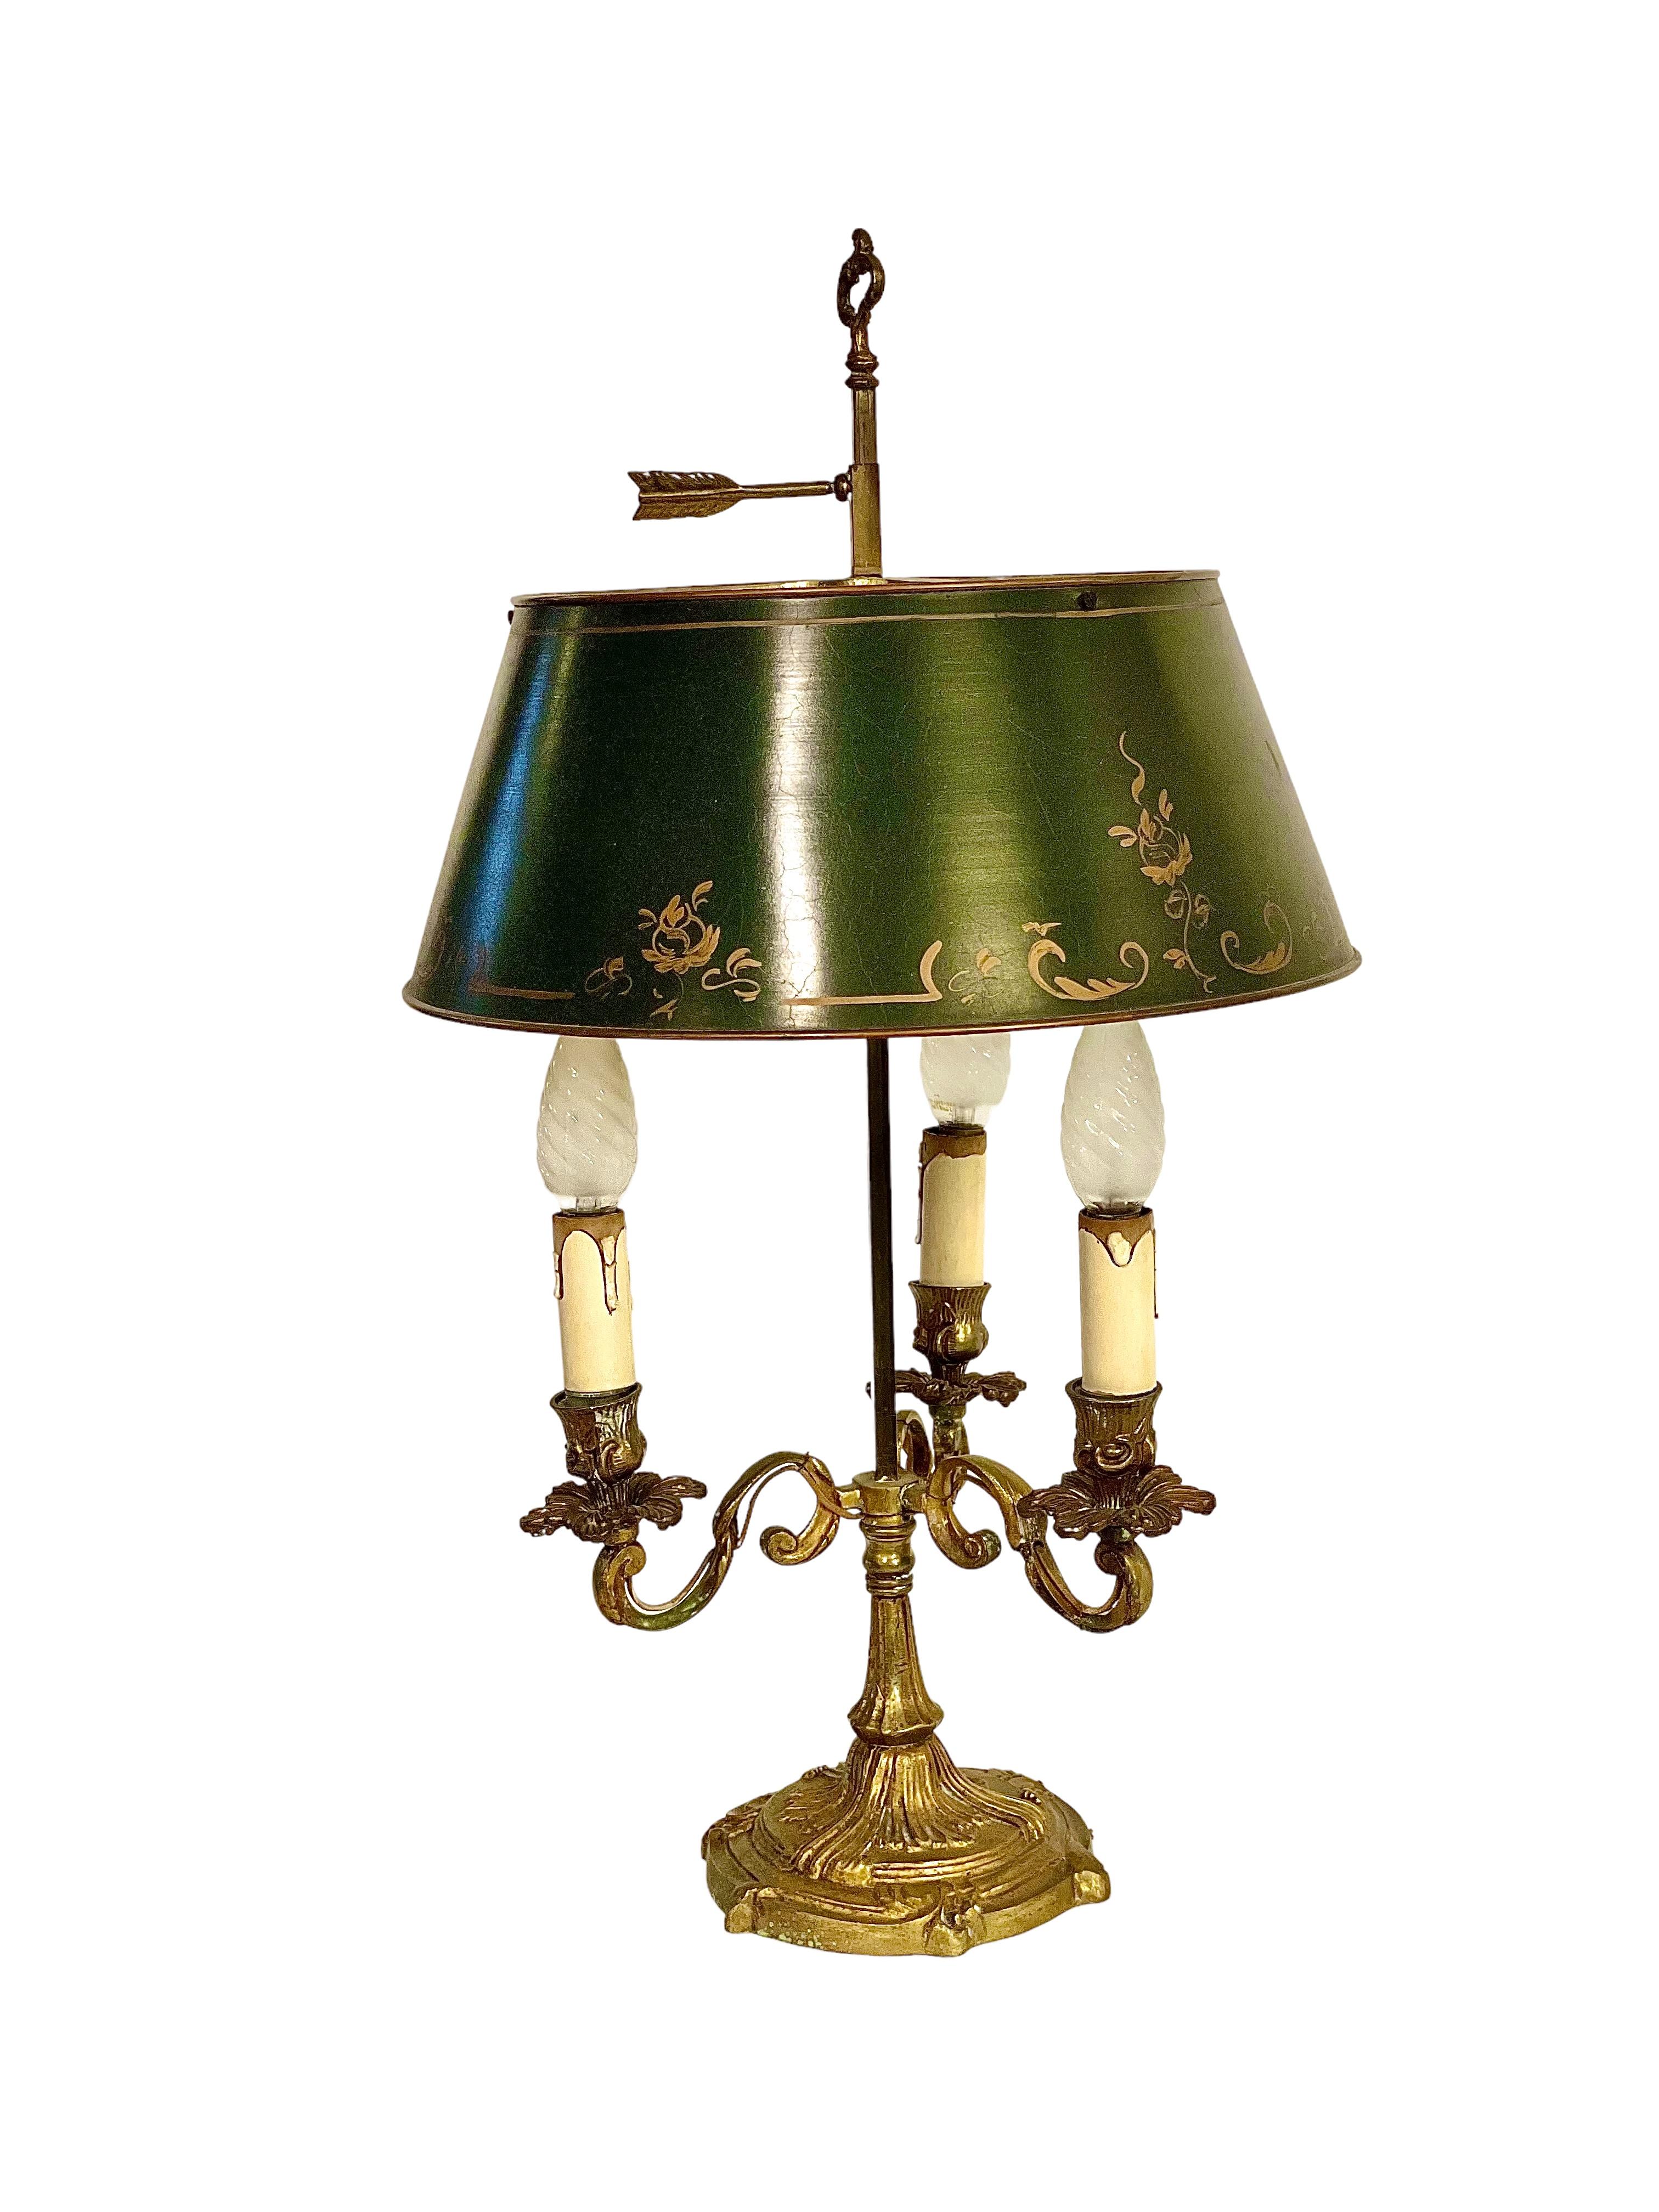 Bouillotte-Tischlampe im Louis-XV-Stil des späten 19. Jahrhunderts, mit originalem, grünem, vergoldetem Tole-Lampenschirm, über einem Sockel mit drei nach oben gerichteten, dekorativen Messing-Kerzenarmen, die von einem schweren Sockel getragen